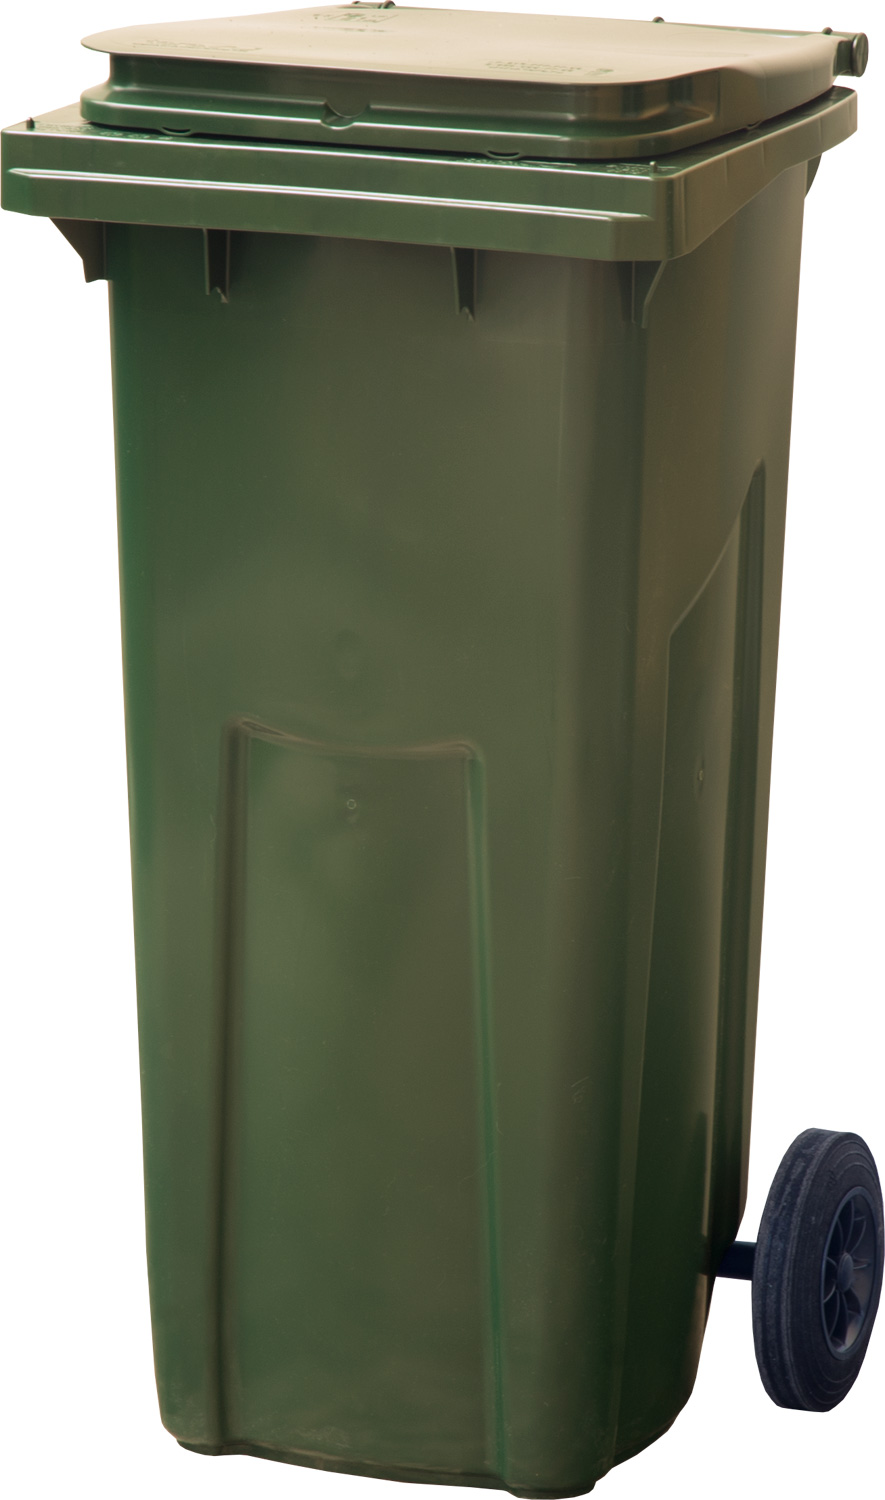 Мусорный контейнер МКТ 120 зеленый для сбора мусора